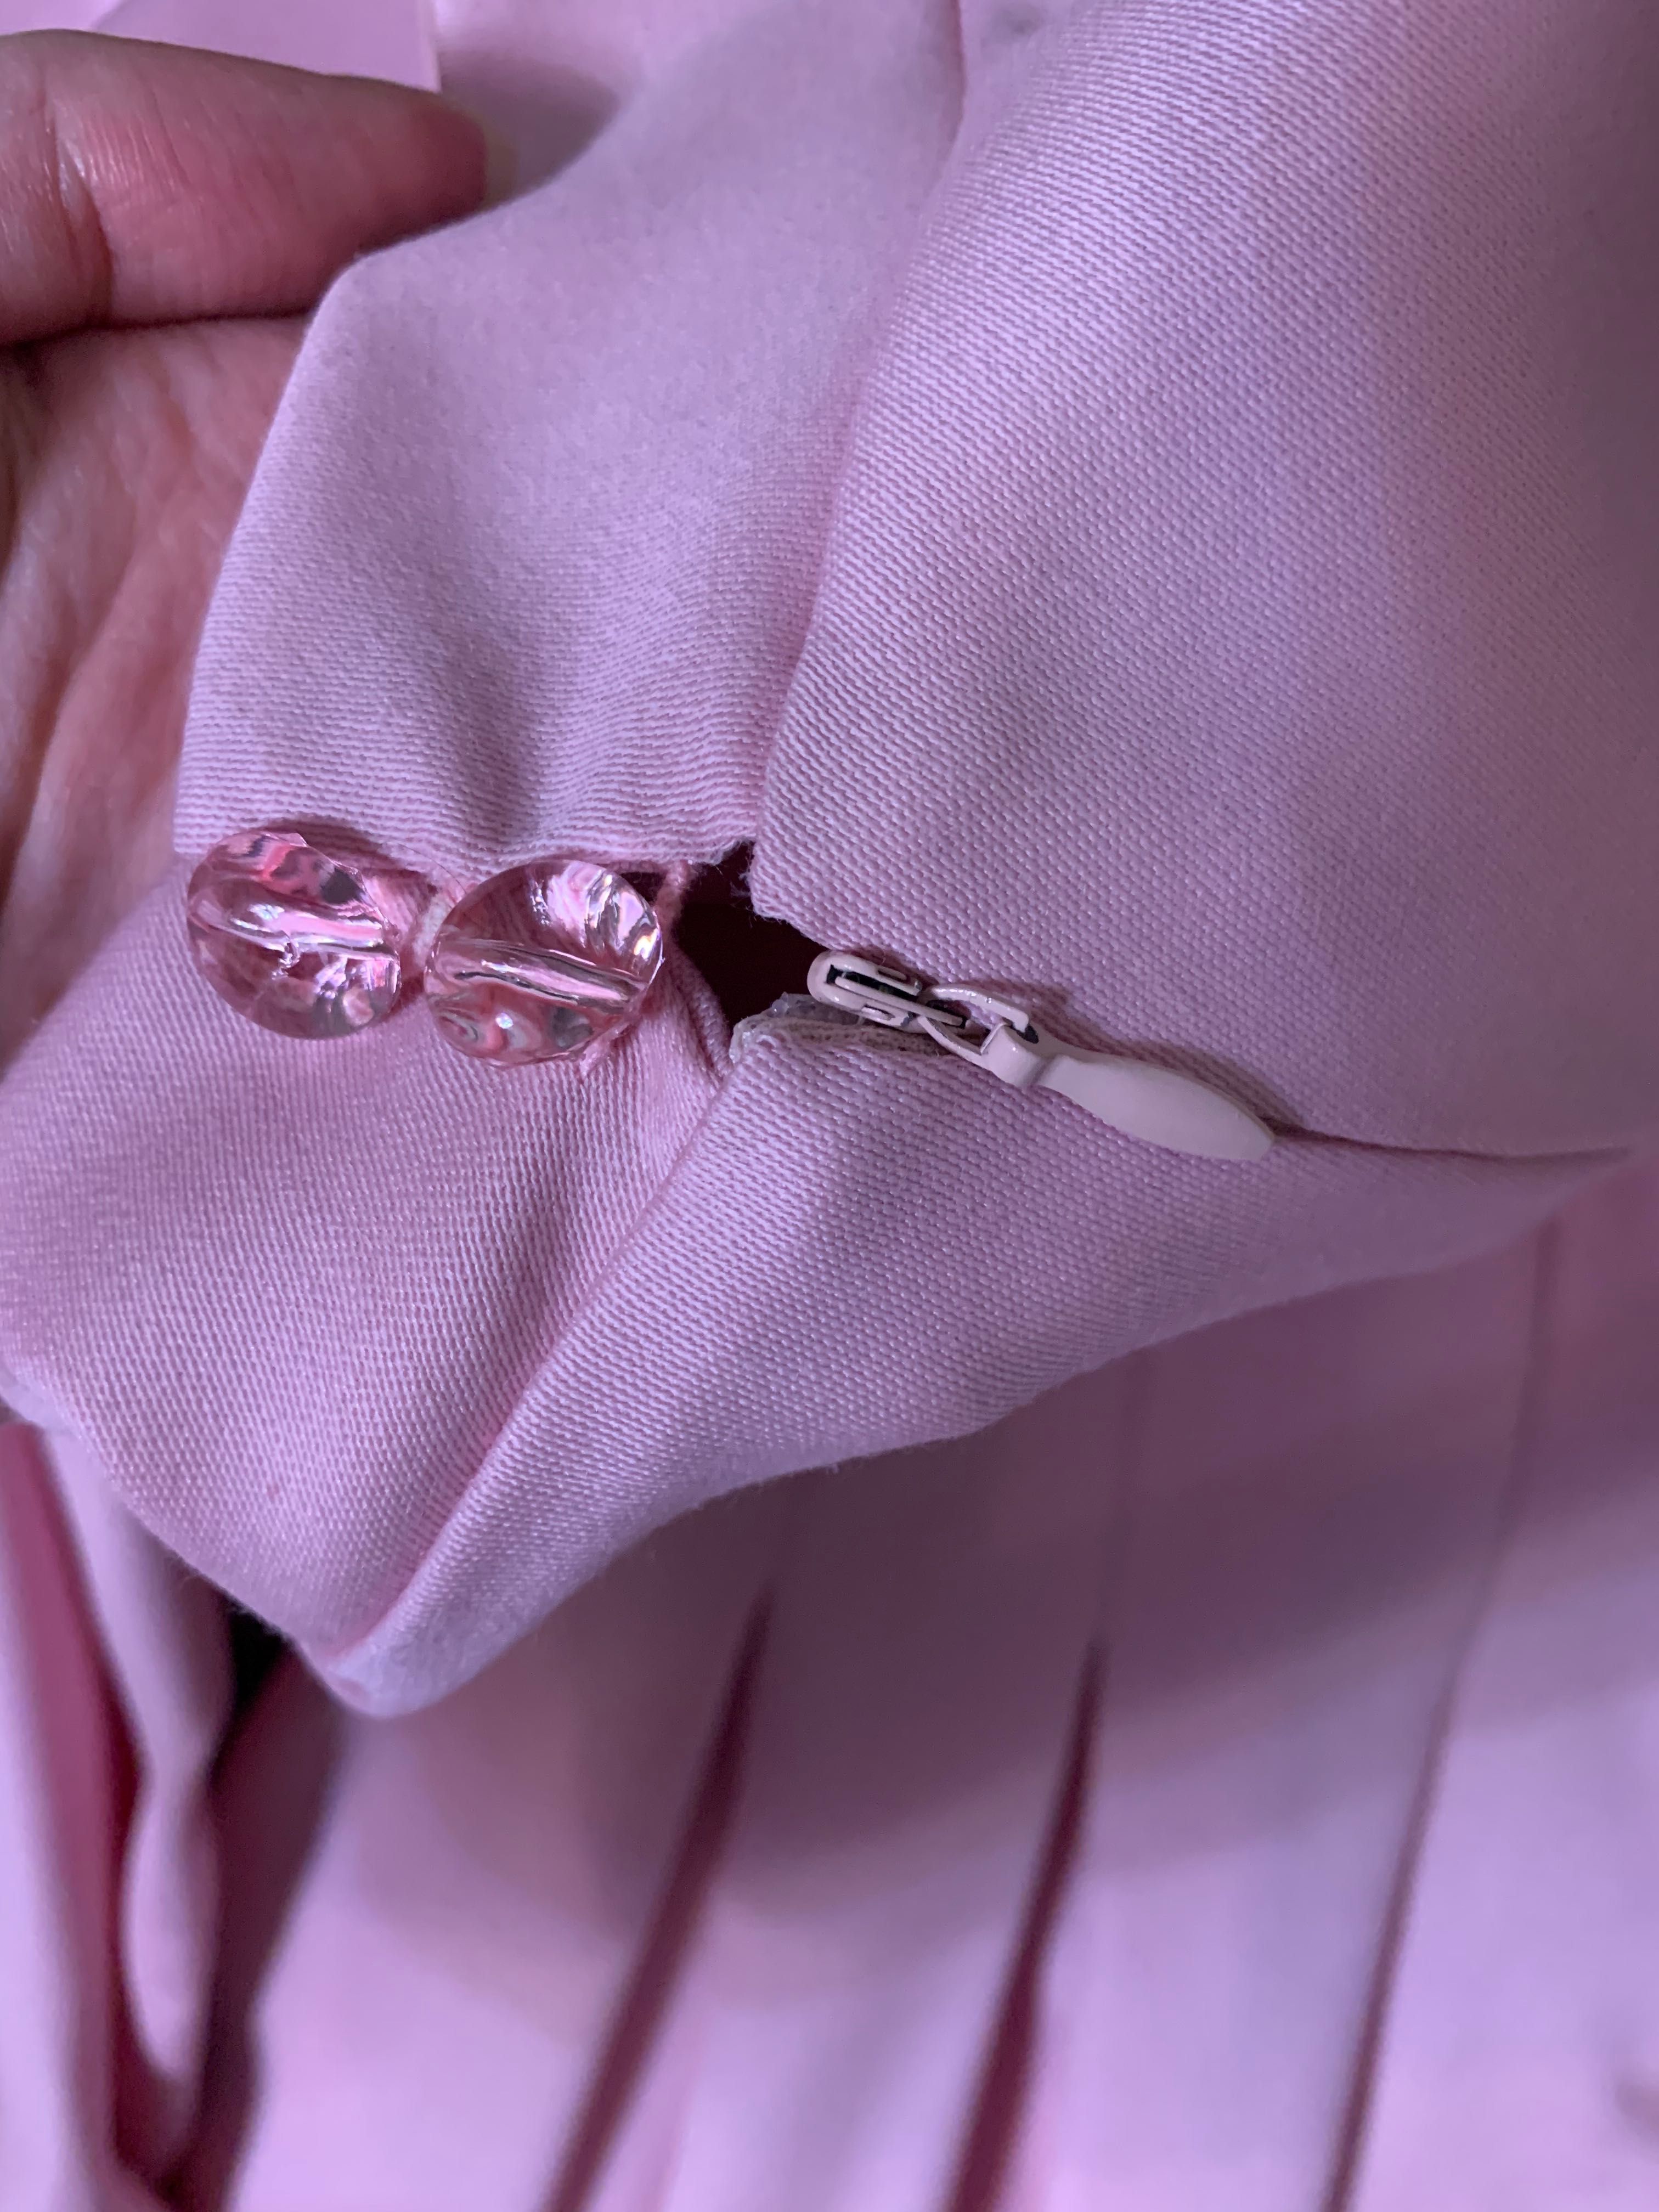 Розовое платье эксклюзивного пошива